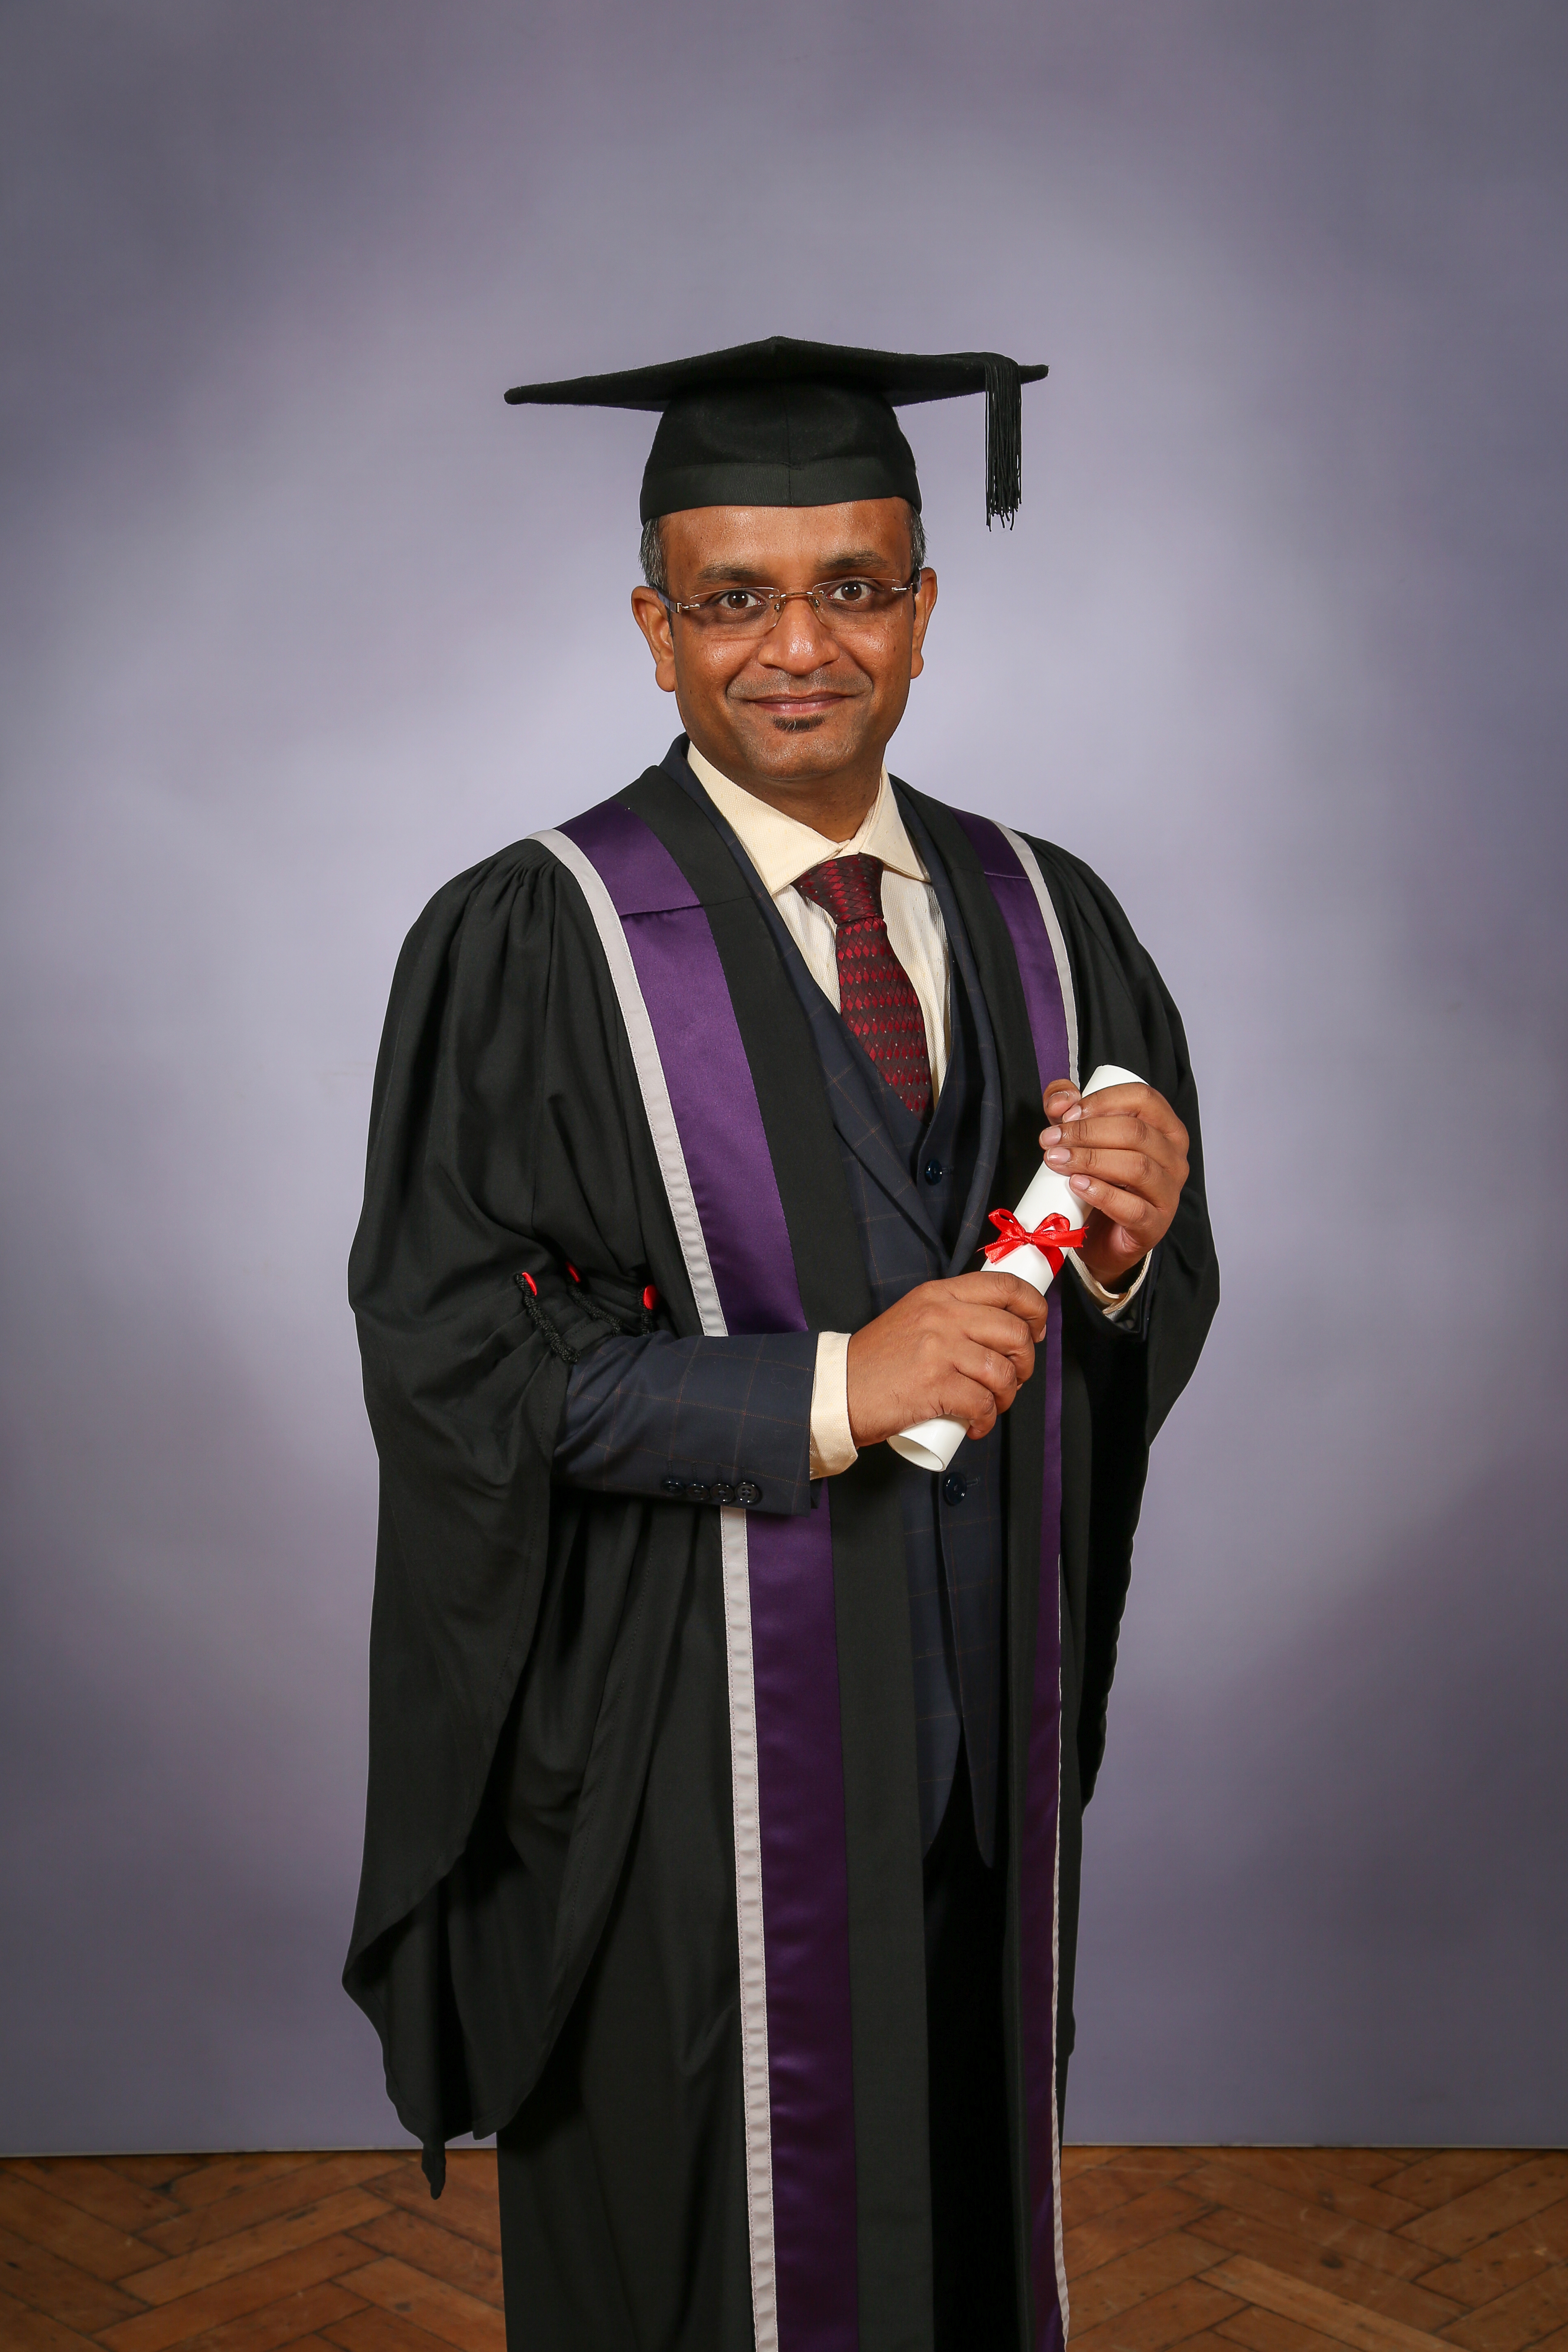 Dr. Nishant Agarwal